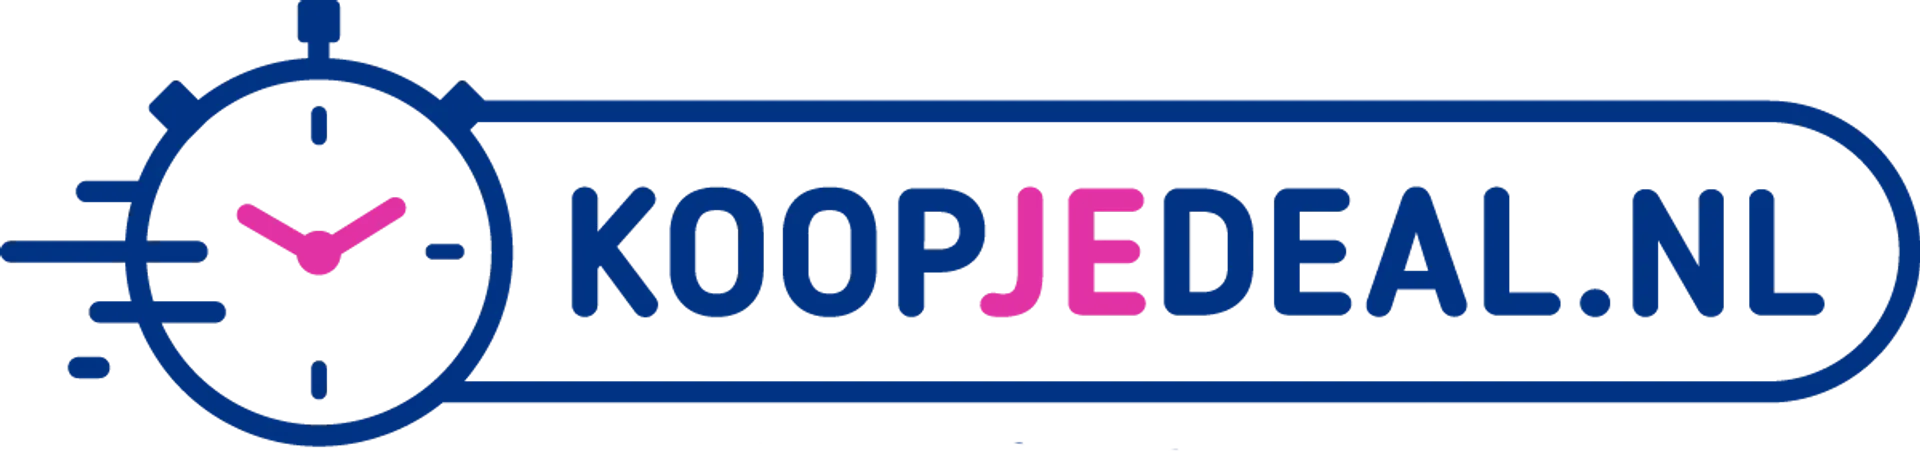 KOOPJEDEAL logo in de folder van deze week